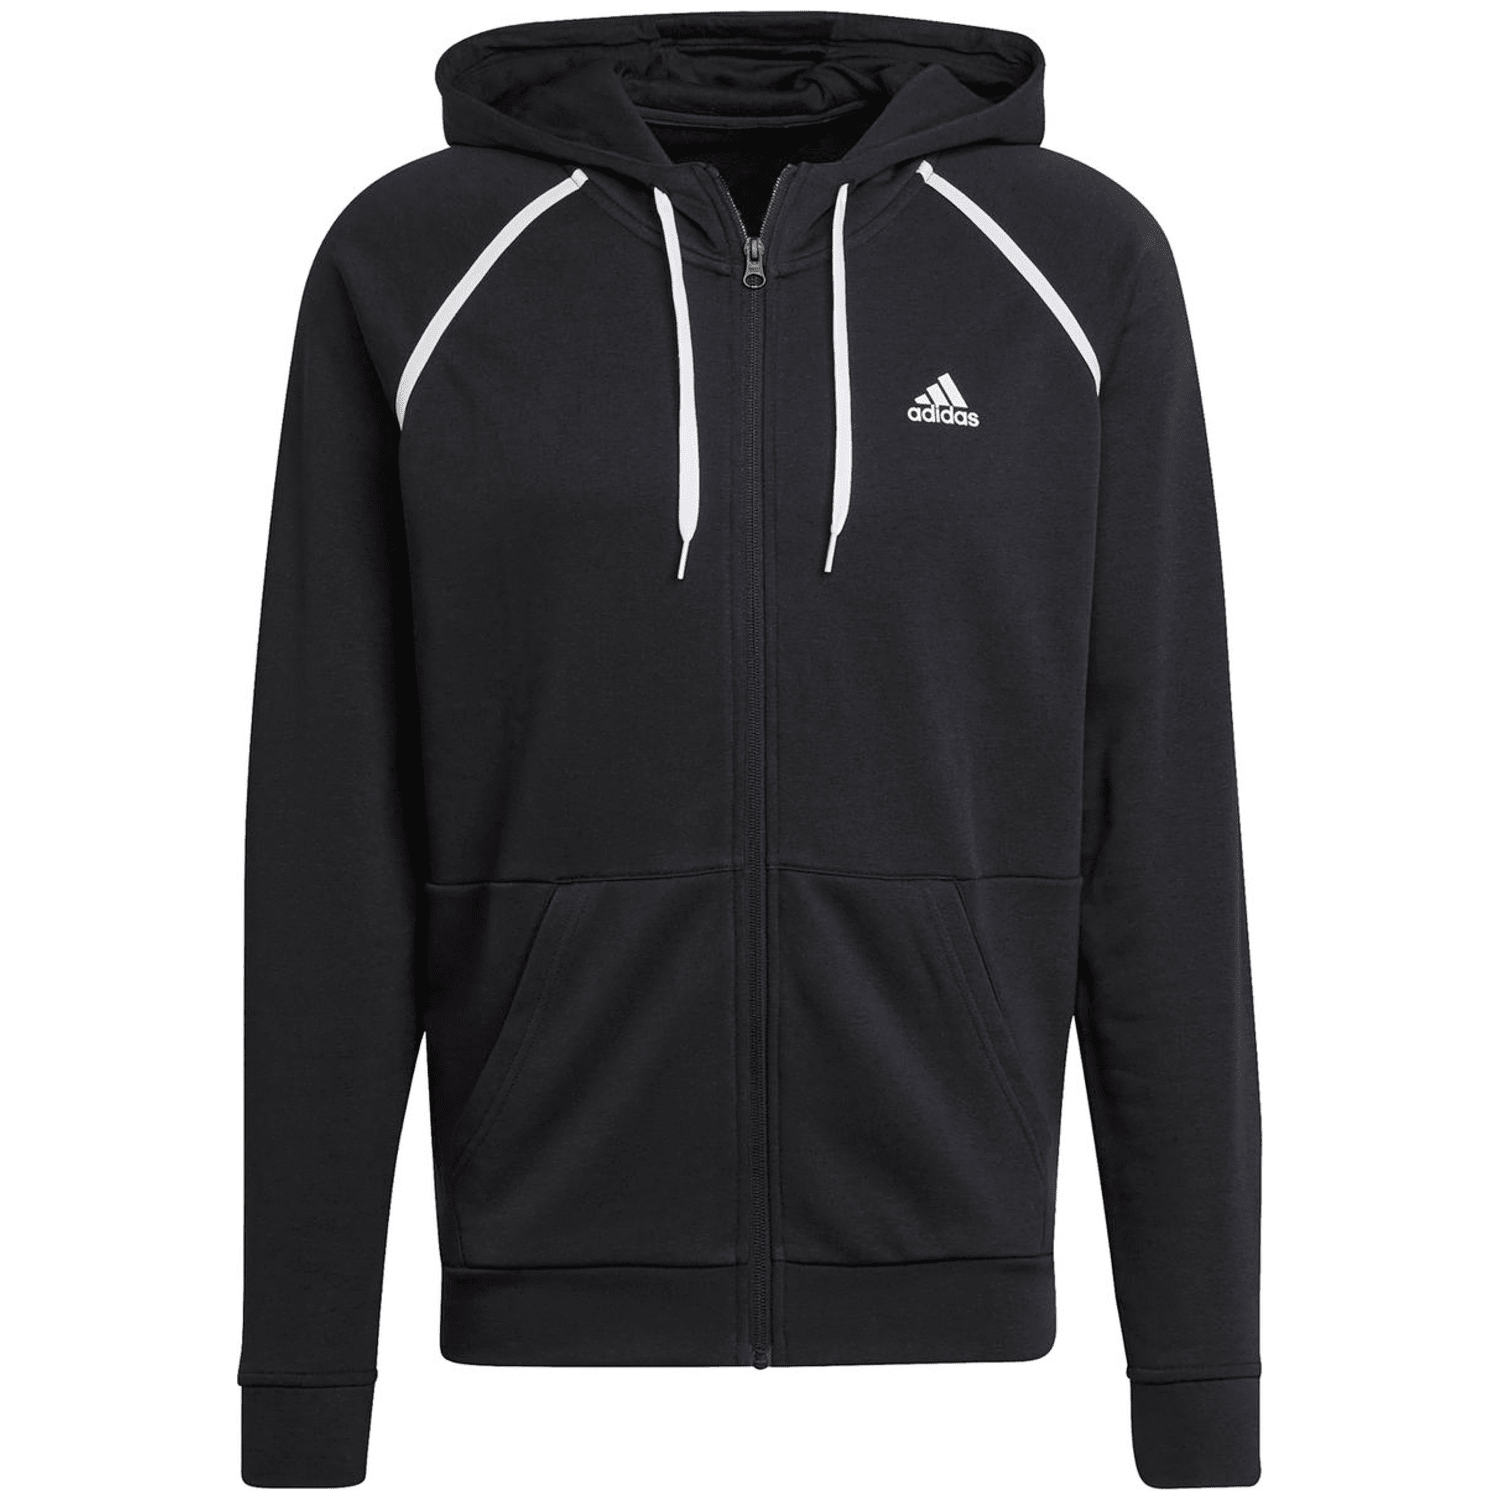 Adidas Cotton Piping Trainingsanzug Herren Trainingsanzug